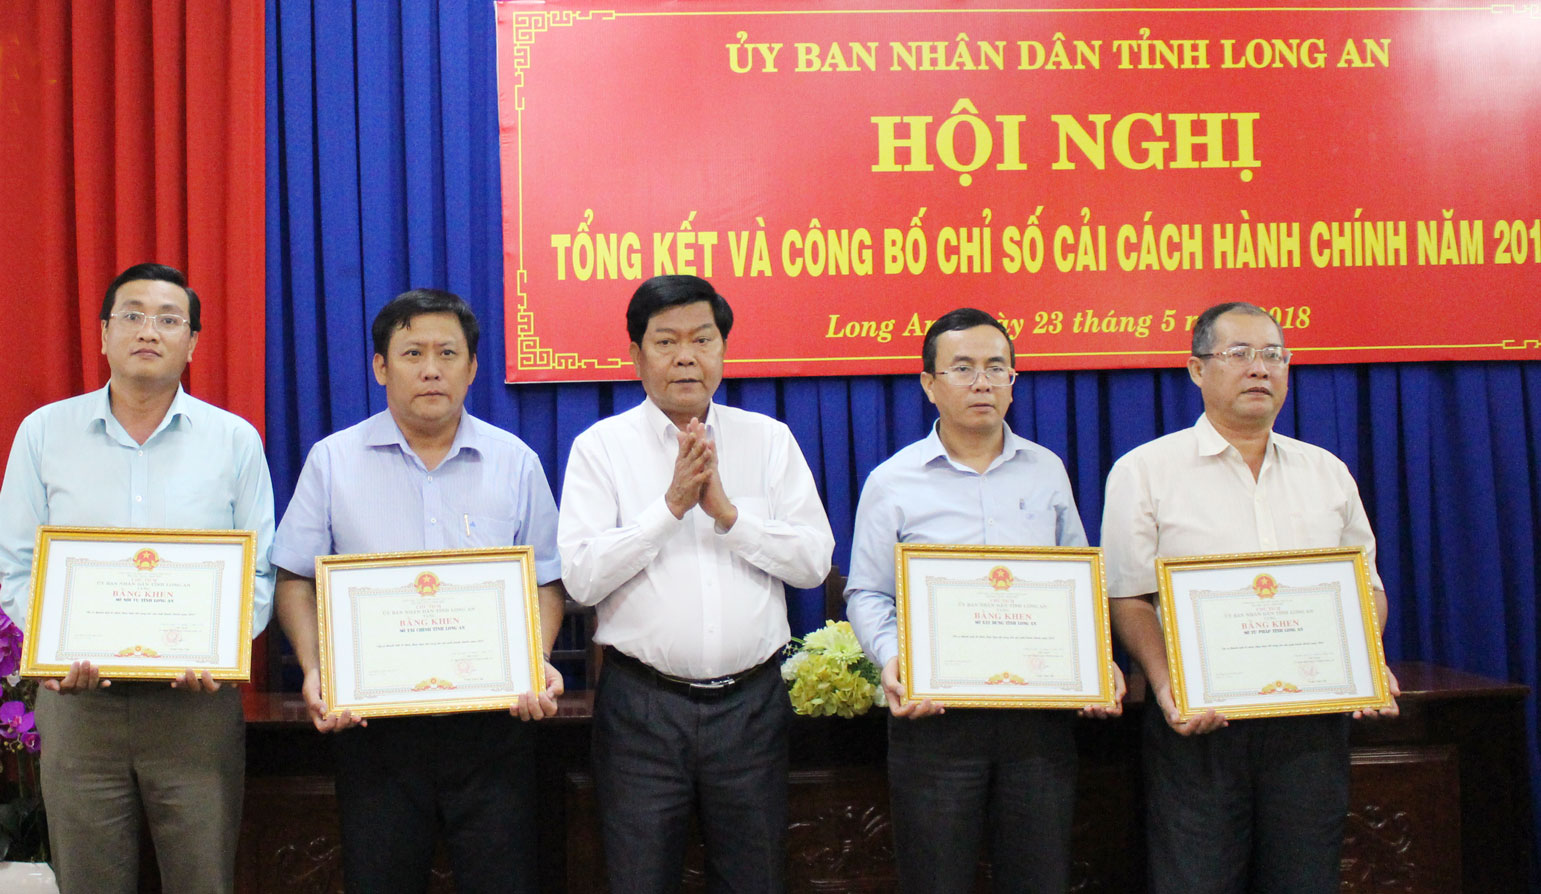 Chủ tịch UBND tỉnh - Trần Văn Cần tặng bằng khen cho các tập thể đạt thành tích xuất sắc trong hoạt động cải cách hành chính 2017